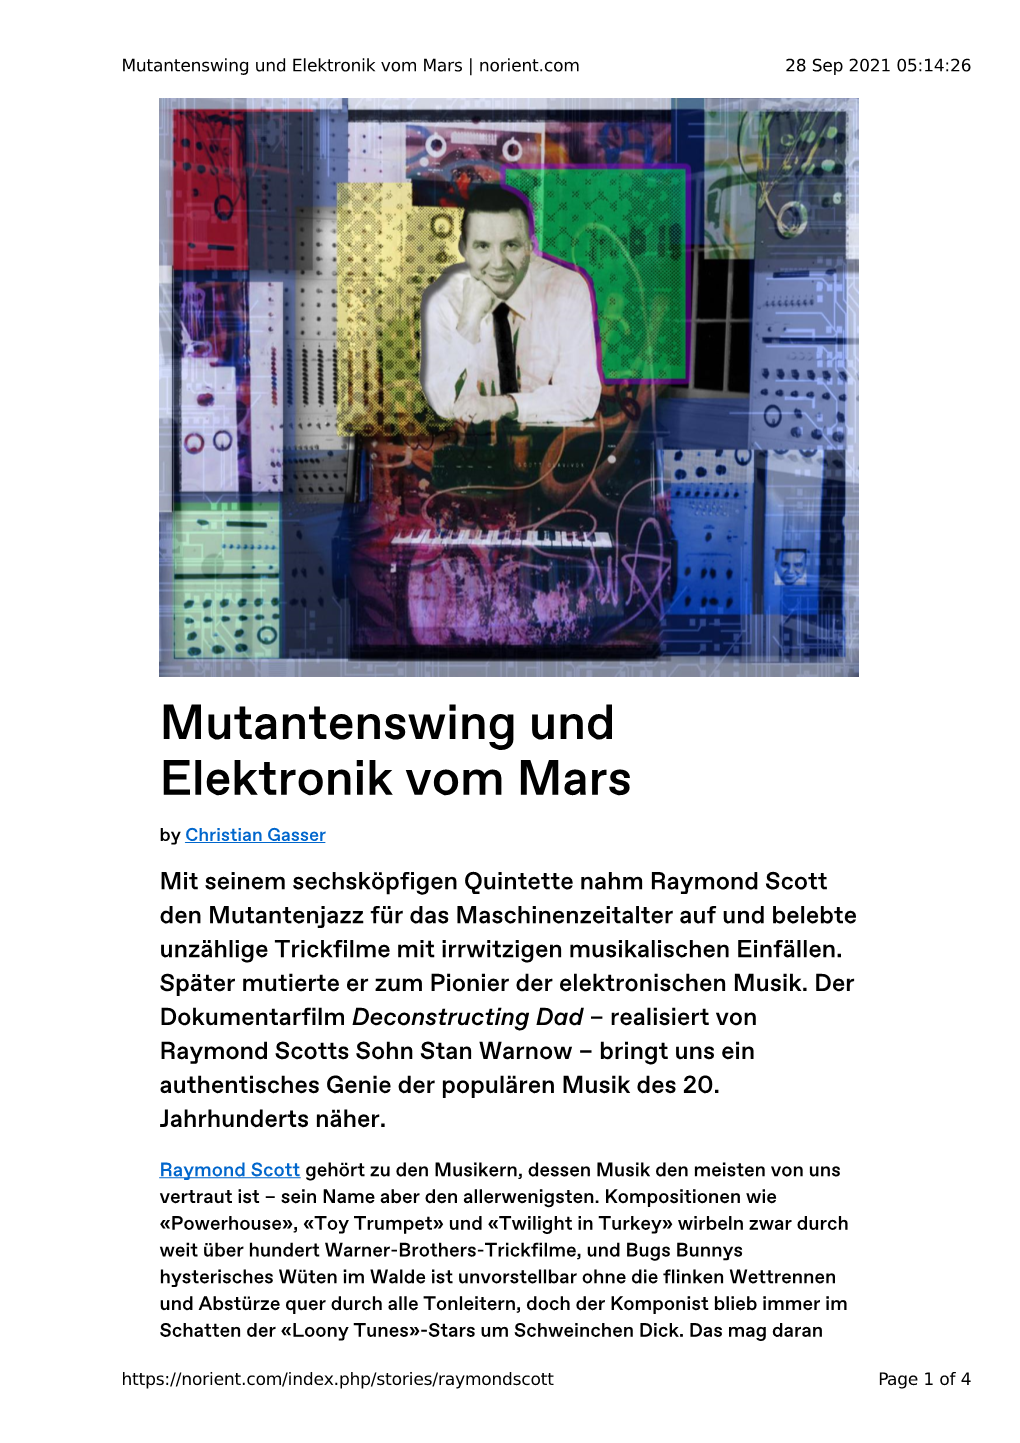 Mutantenswing Und Elektronik Vom Mars | Norient.Com 28 Sep 2021 05:14:26